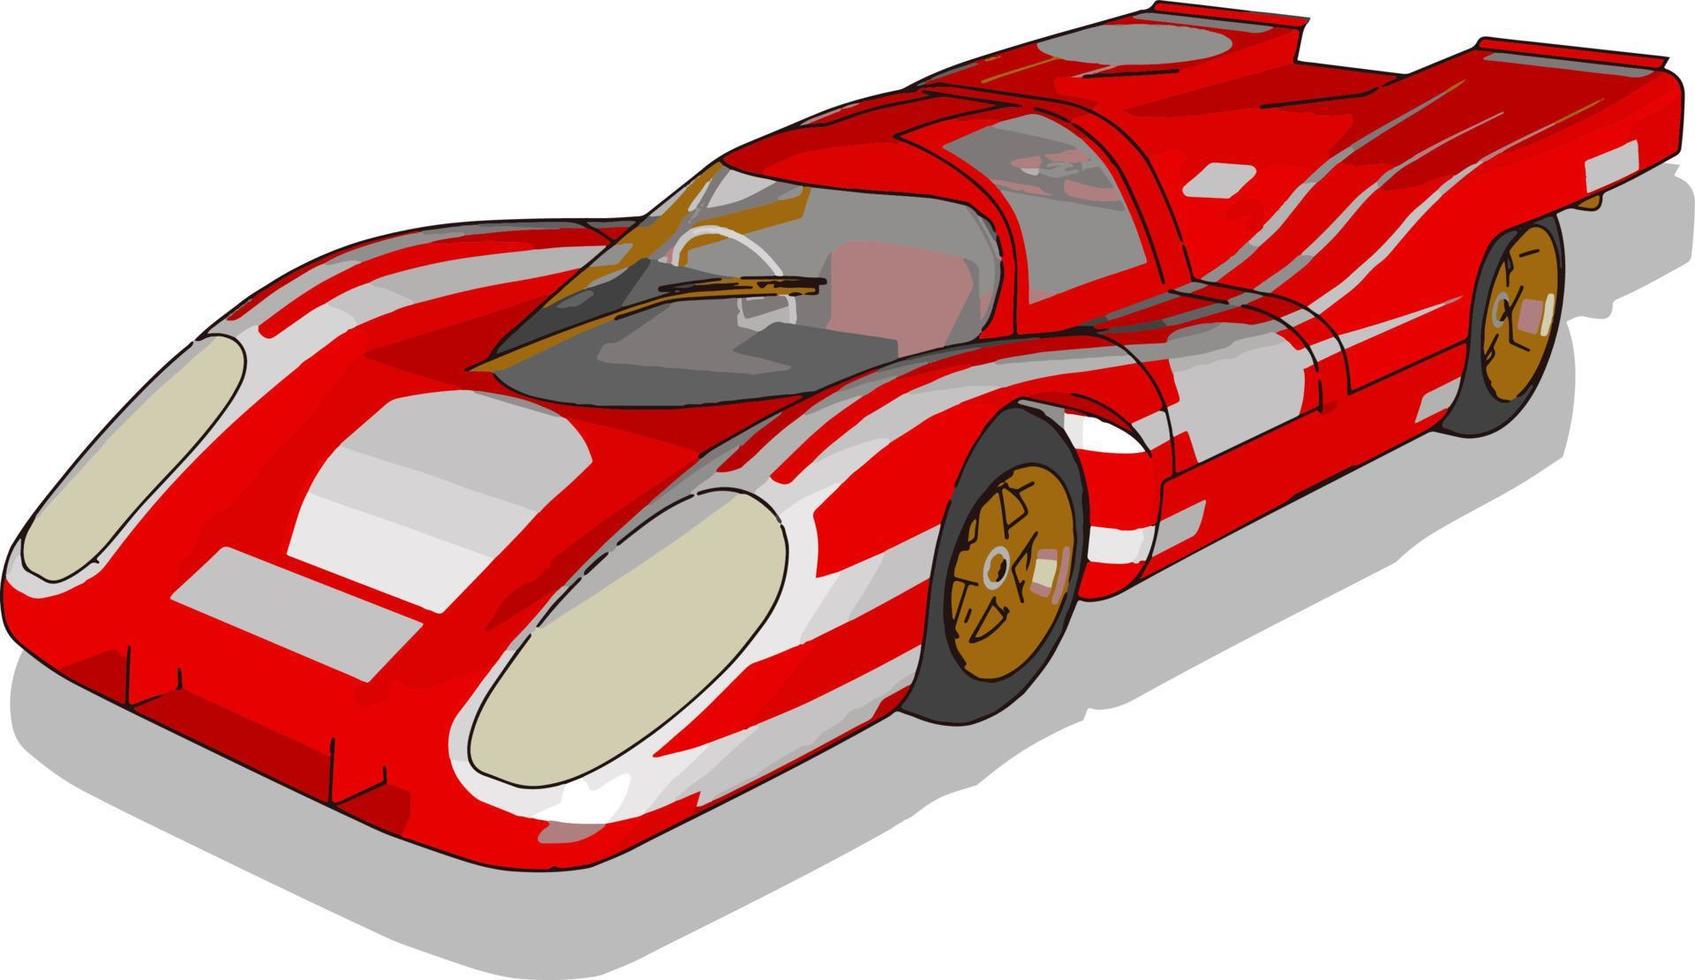 voiture de course rouge, illustration, vecteur sur fond blanc.